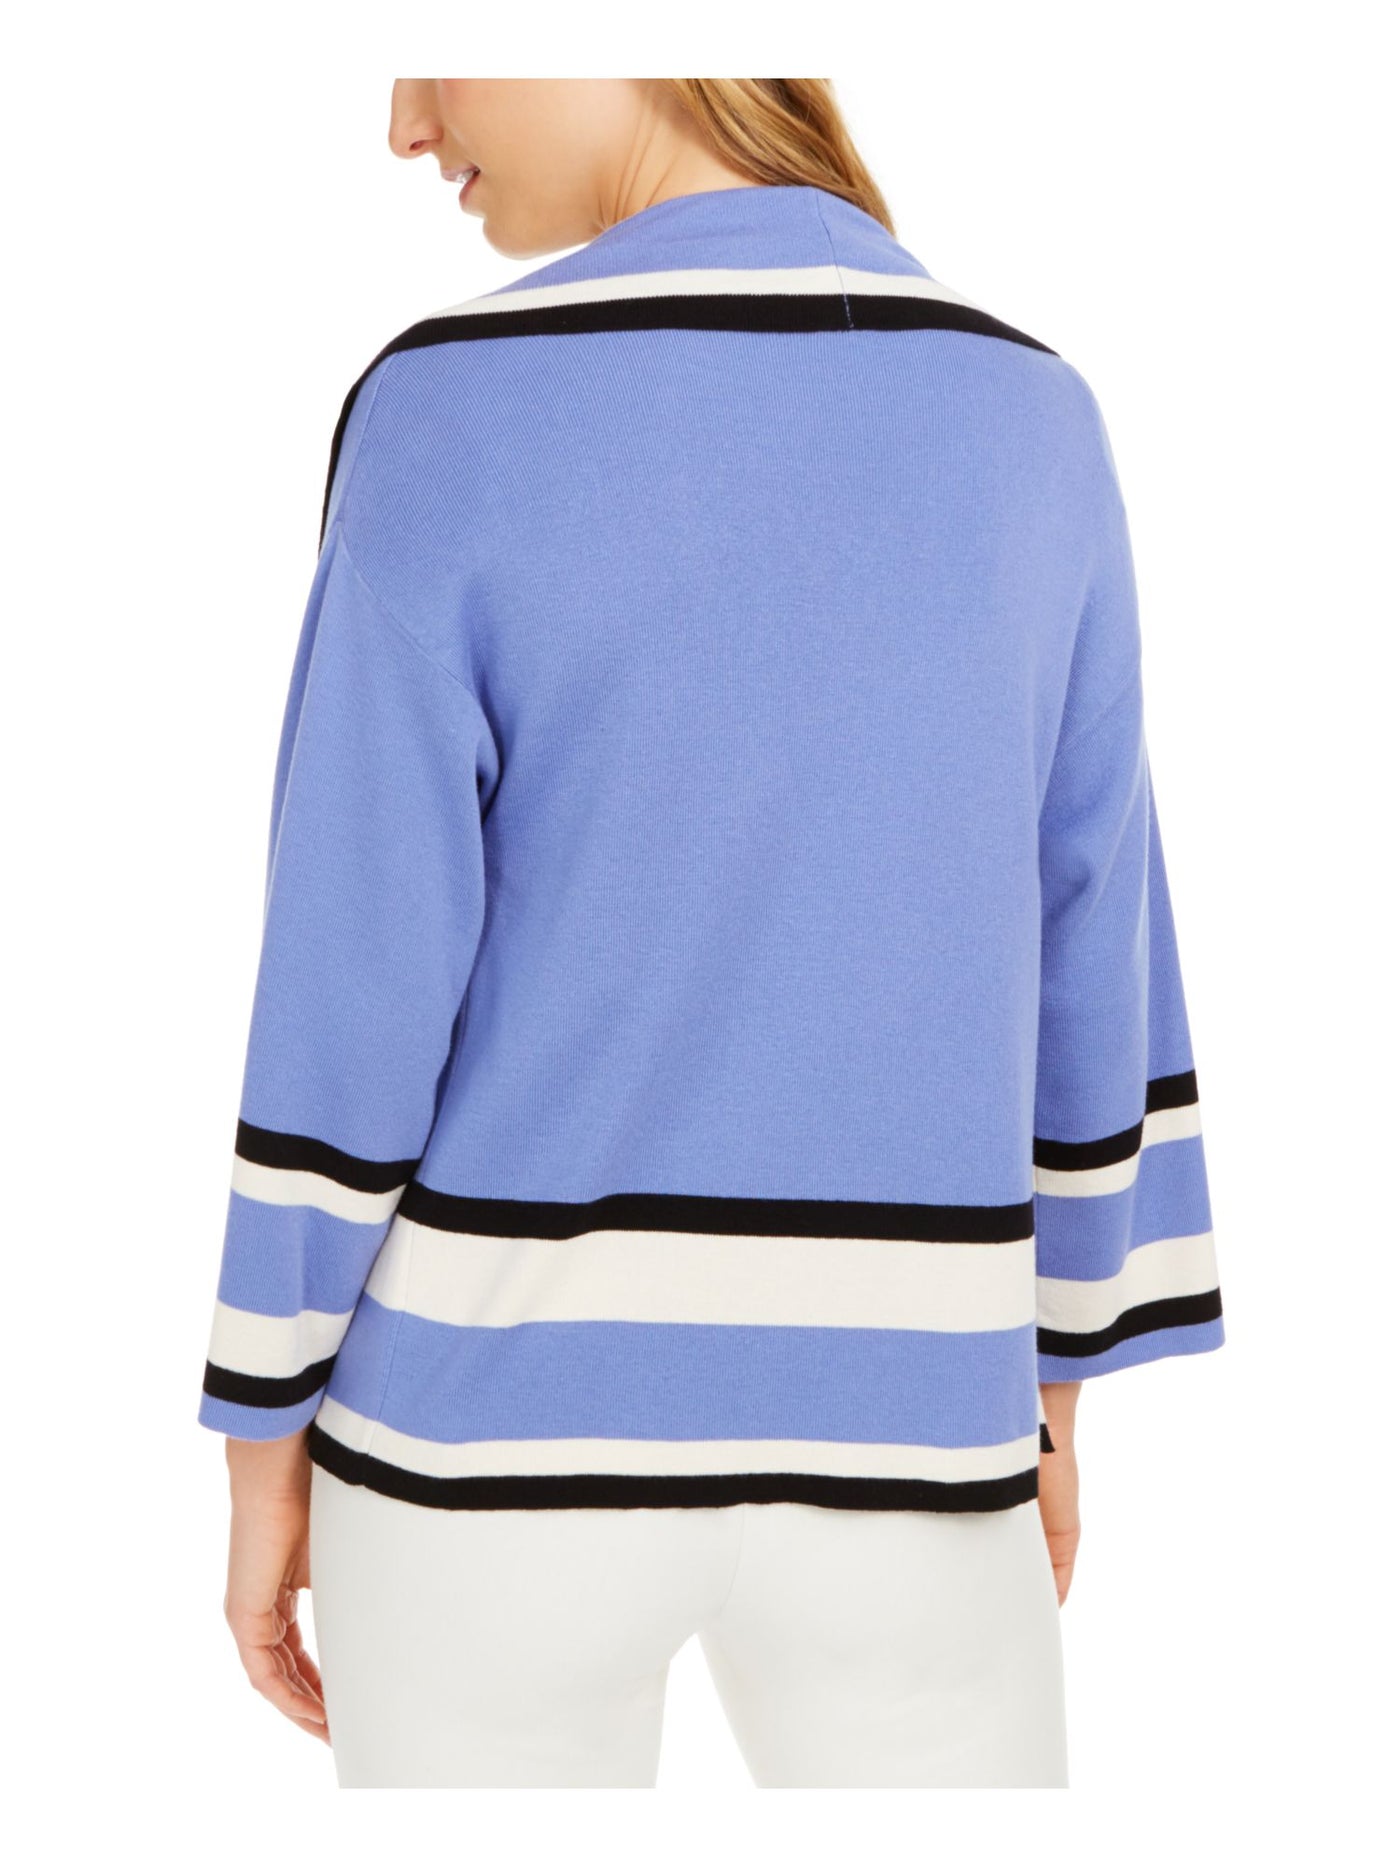 ANNE KLEIN Womens Blue Striped Long Sleeve Open Cardigan Sweater XL